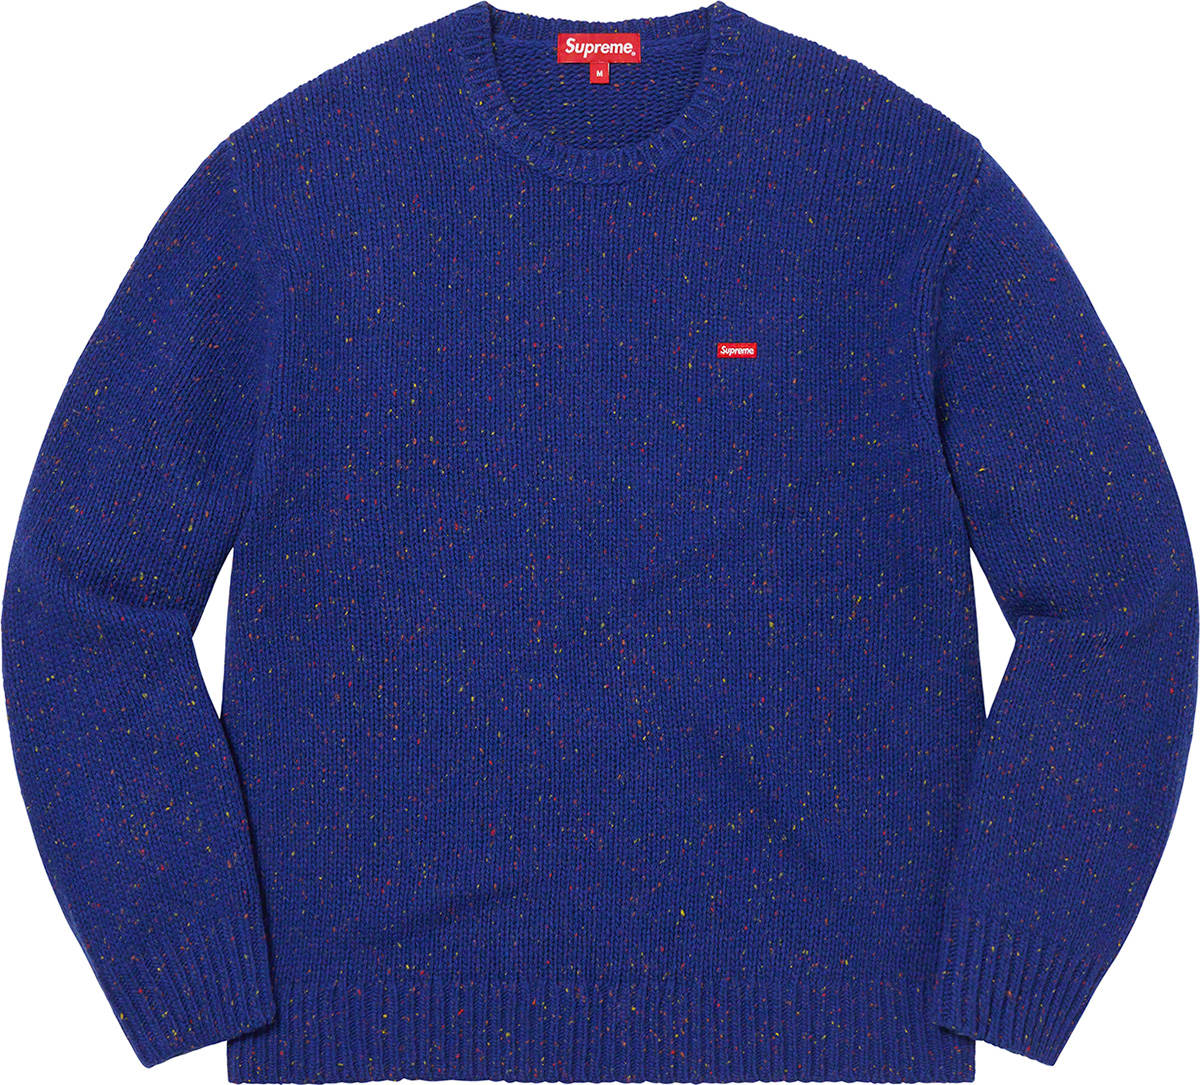 upreme Small Box Speckle Sweater Ｍサイズ